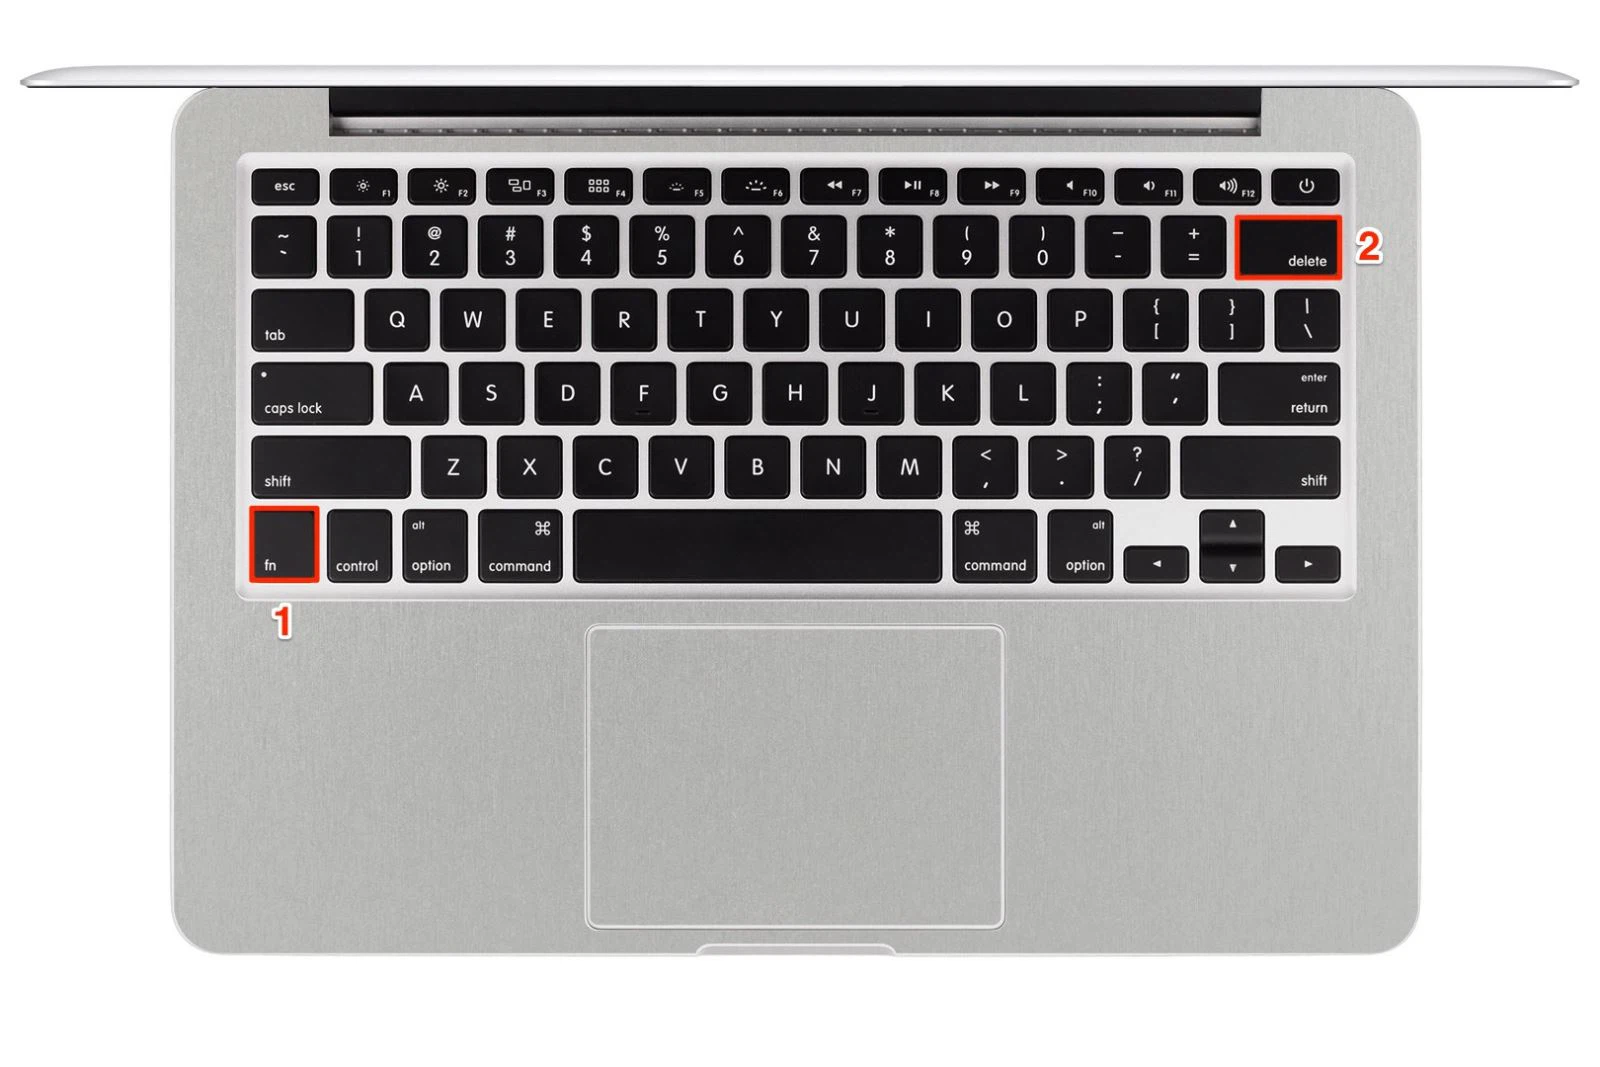 Trải nghiệm Galaxy Tab S2 Keyboard Cover - Bộ bàn phím rời